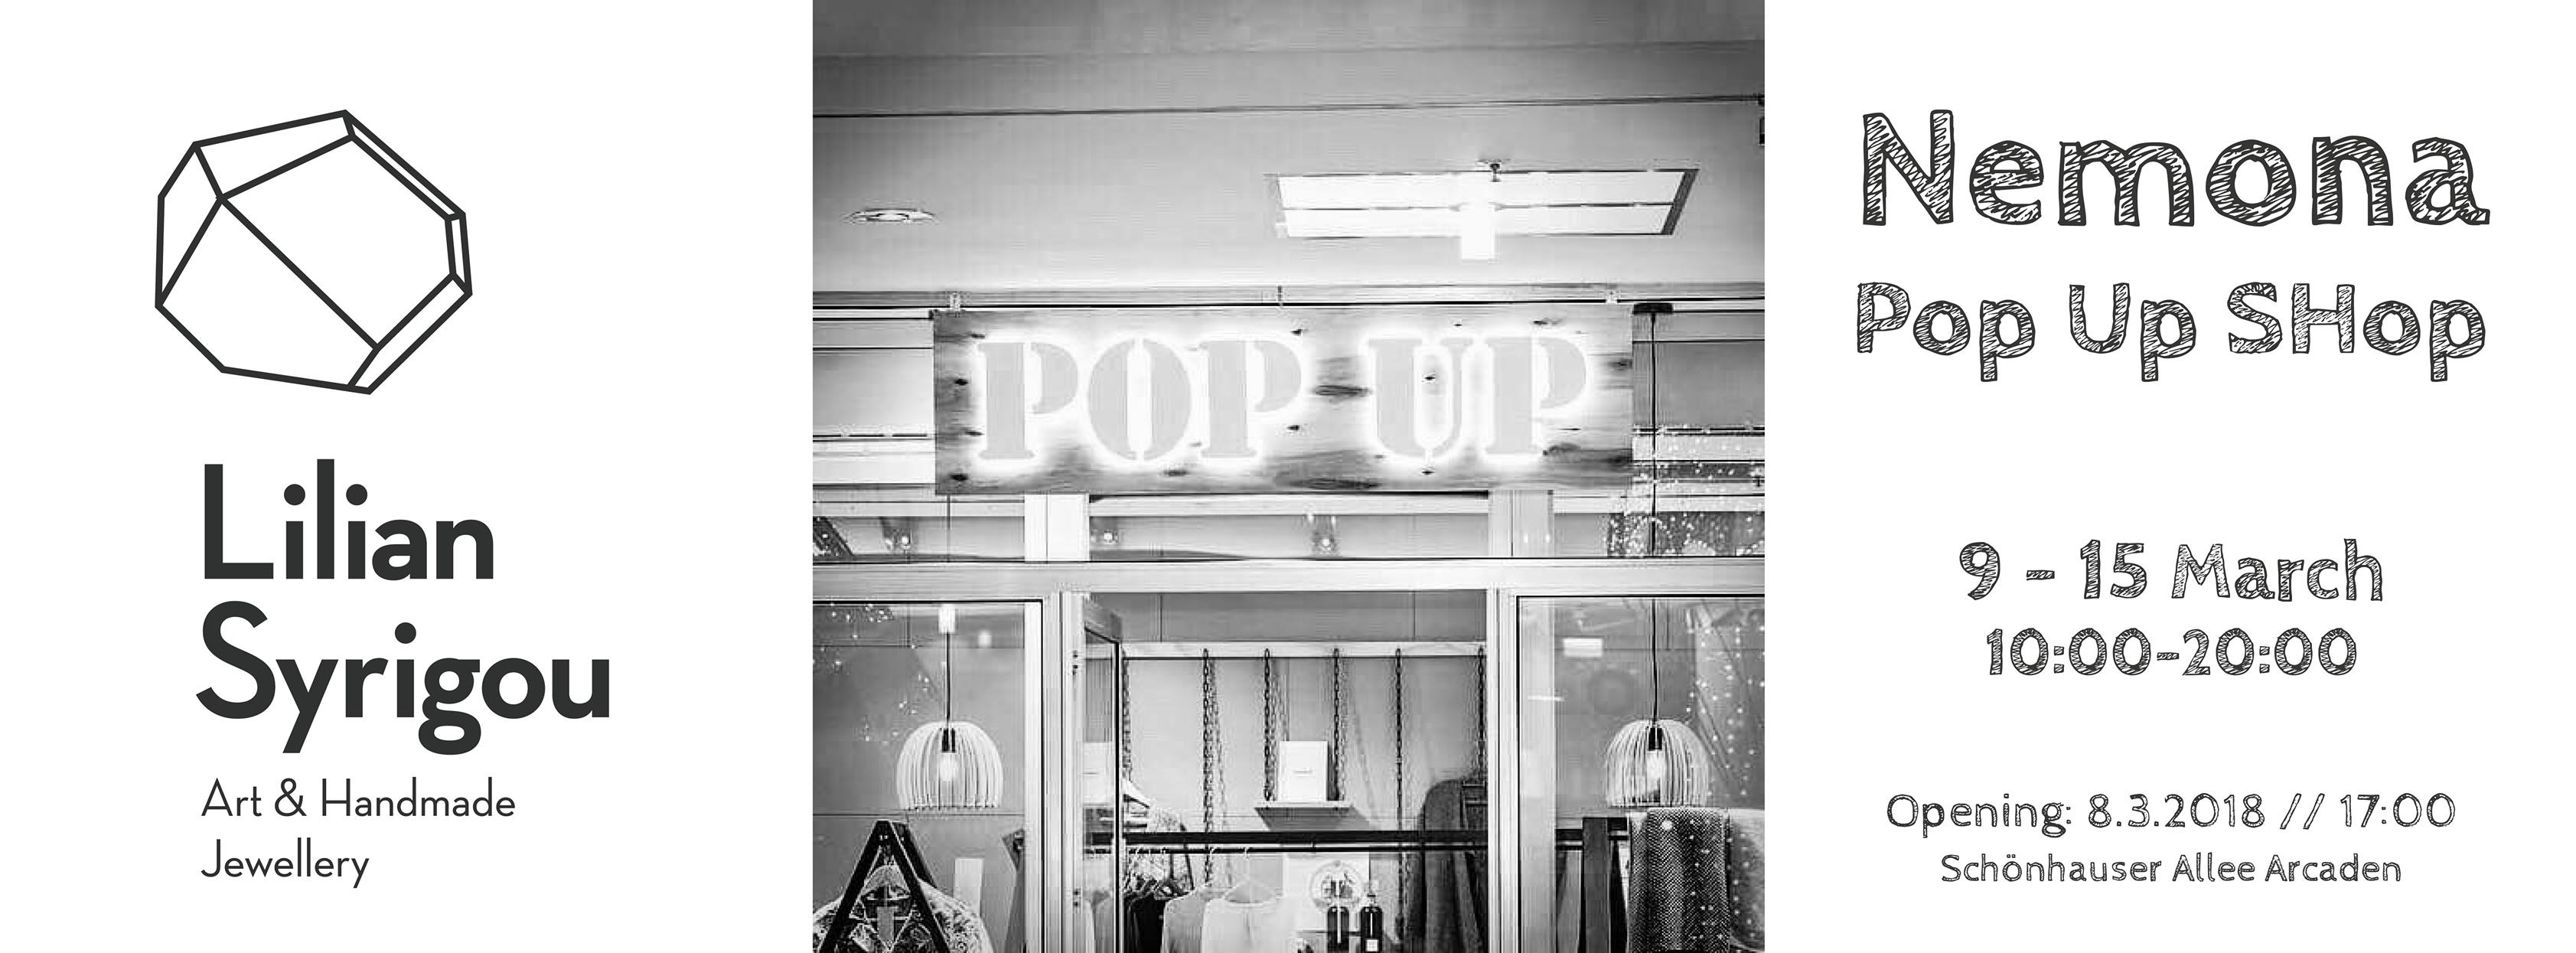 Pop Up Shop at Schönhauser Allee Arcaden Berlin 9-15/3/2018